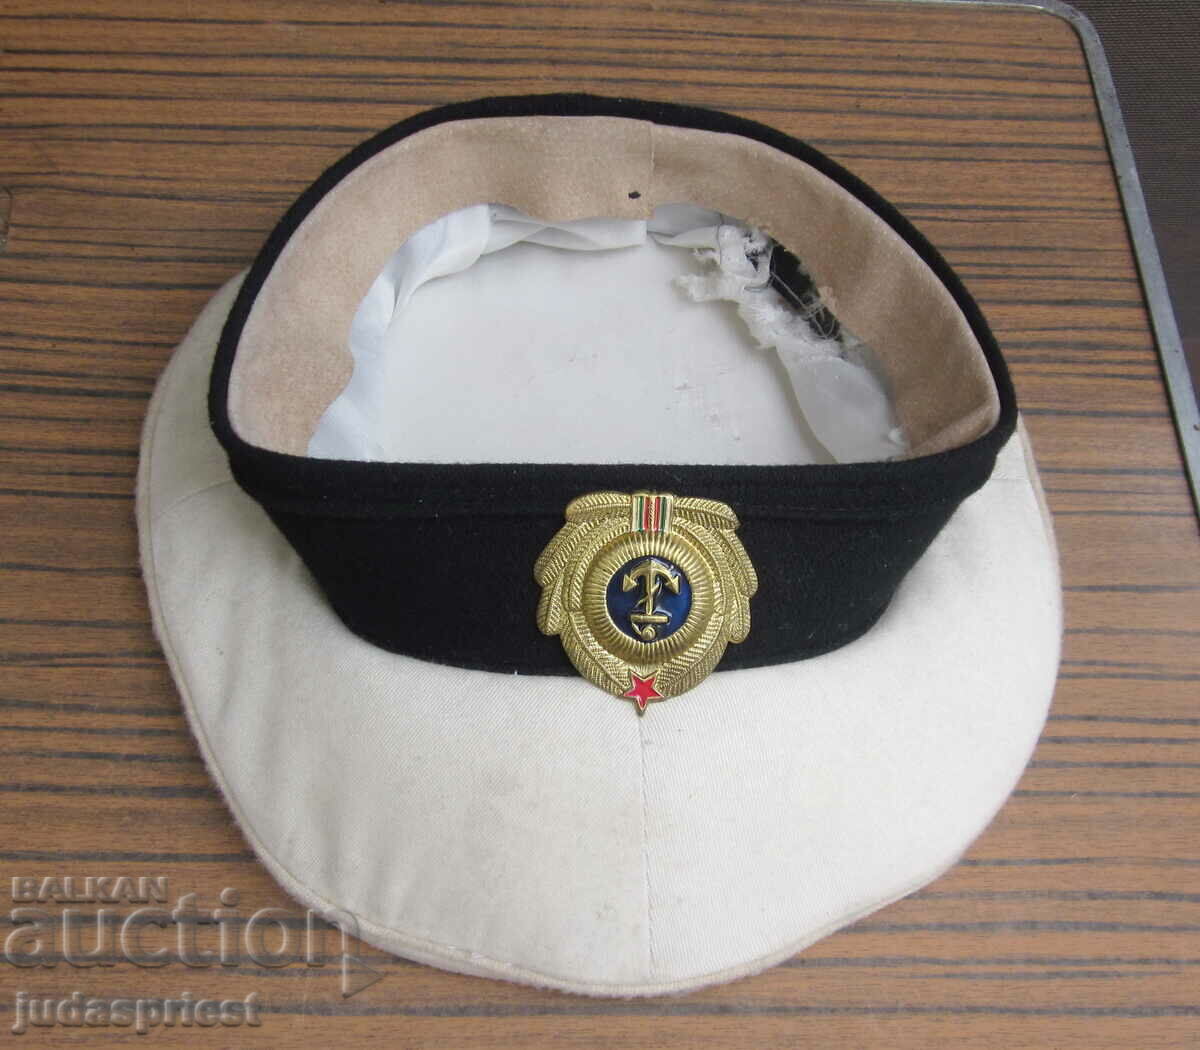 θαλάσσιο καπέλο αξιωματικού ζωοτροφών του βουλγαρικού ναυτικού